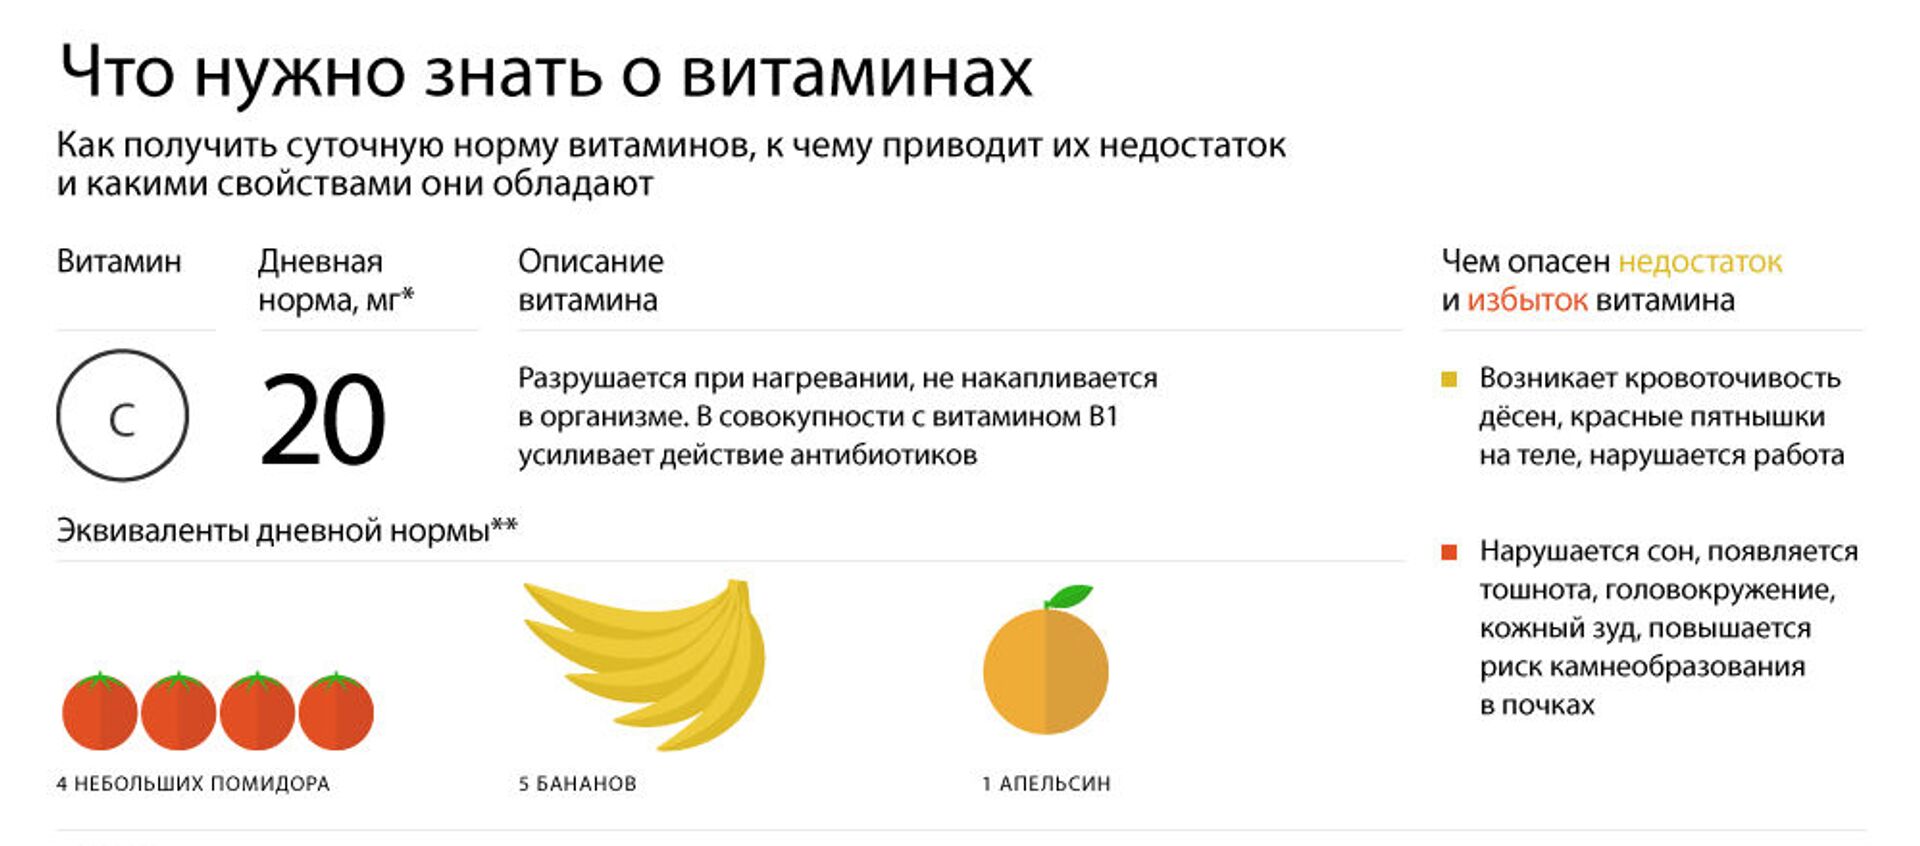 Что нужно знать о витаминах - Sputnik Беларусь, 1920, 17.11.2019